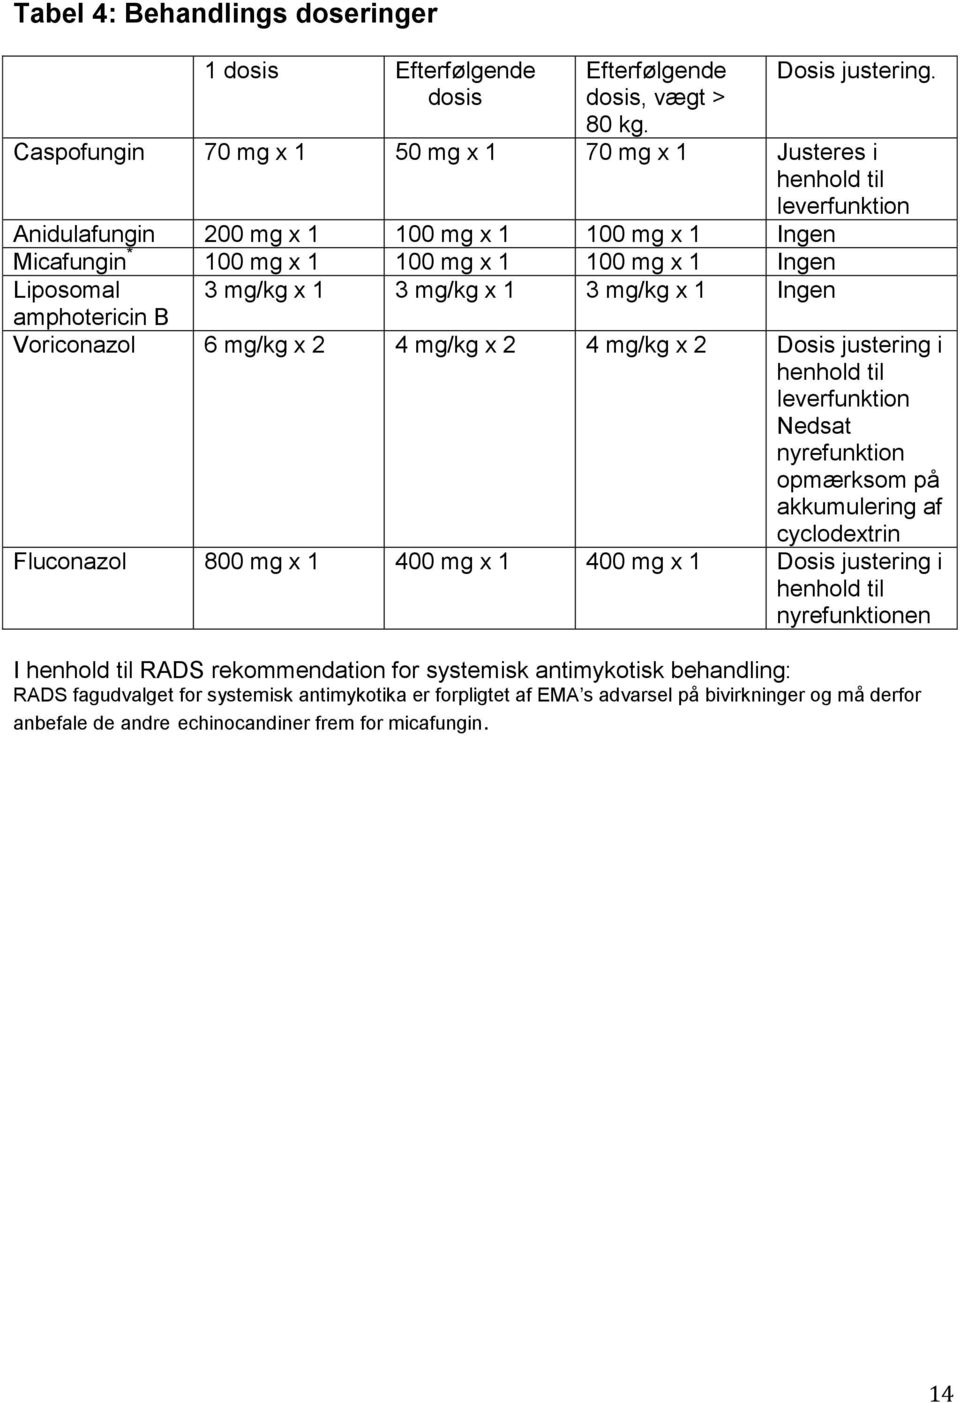 mg/kg x 1 3 mg/kg x 1 3 mg/kg x 1 Ingen amphotericin B Voriconazol 6 mg/kg x 2 4 mg/kg x 2 4 mg/kg x 2 Dosis justering i henhold til leverfunktion Nedsat nyrefunktion opmærksom på akkumulering af